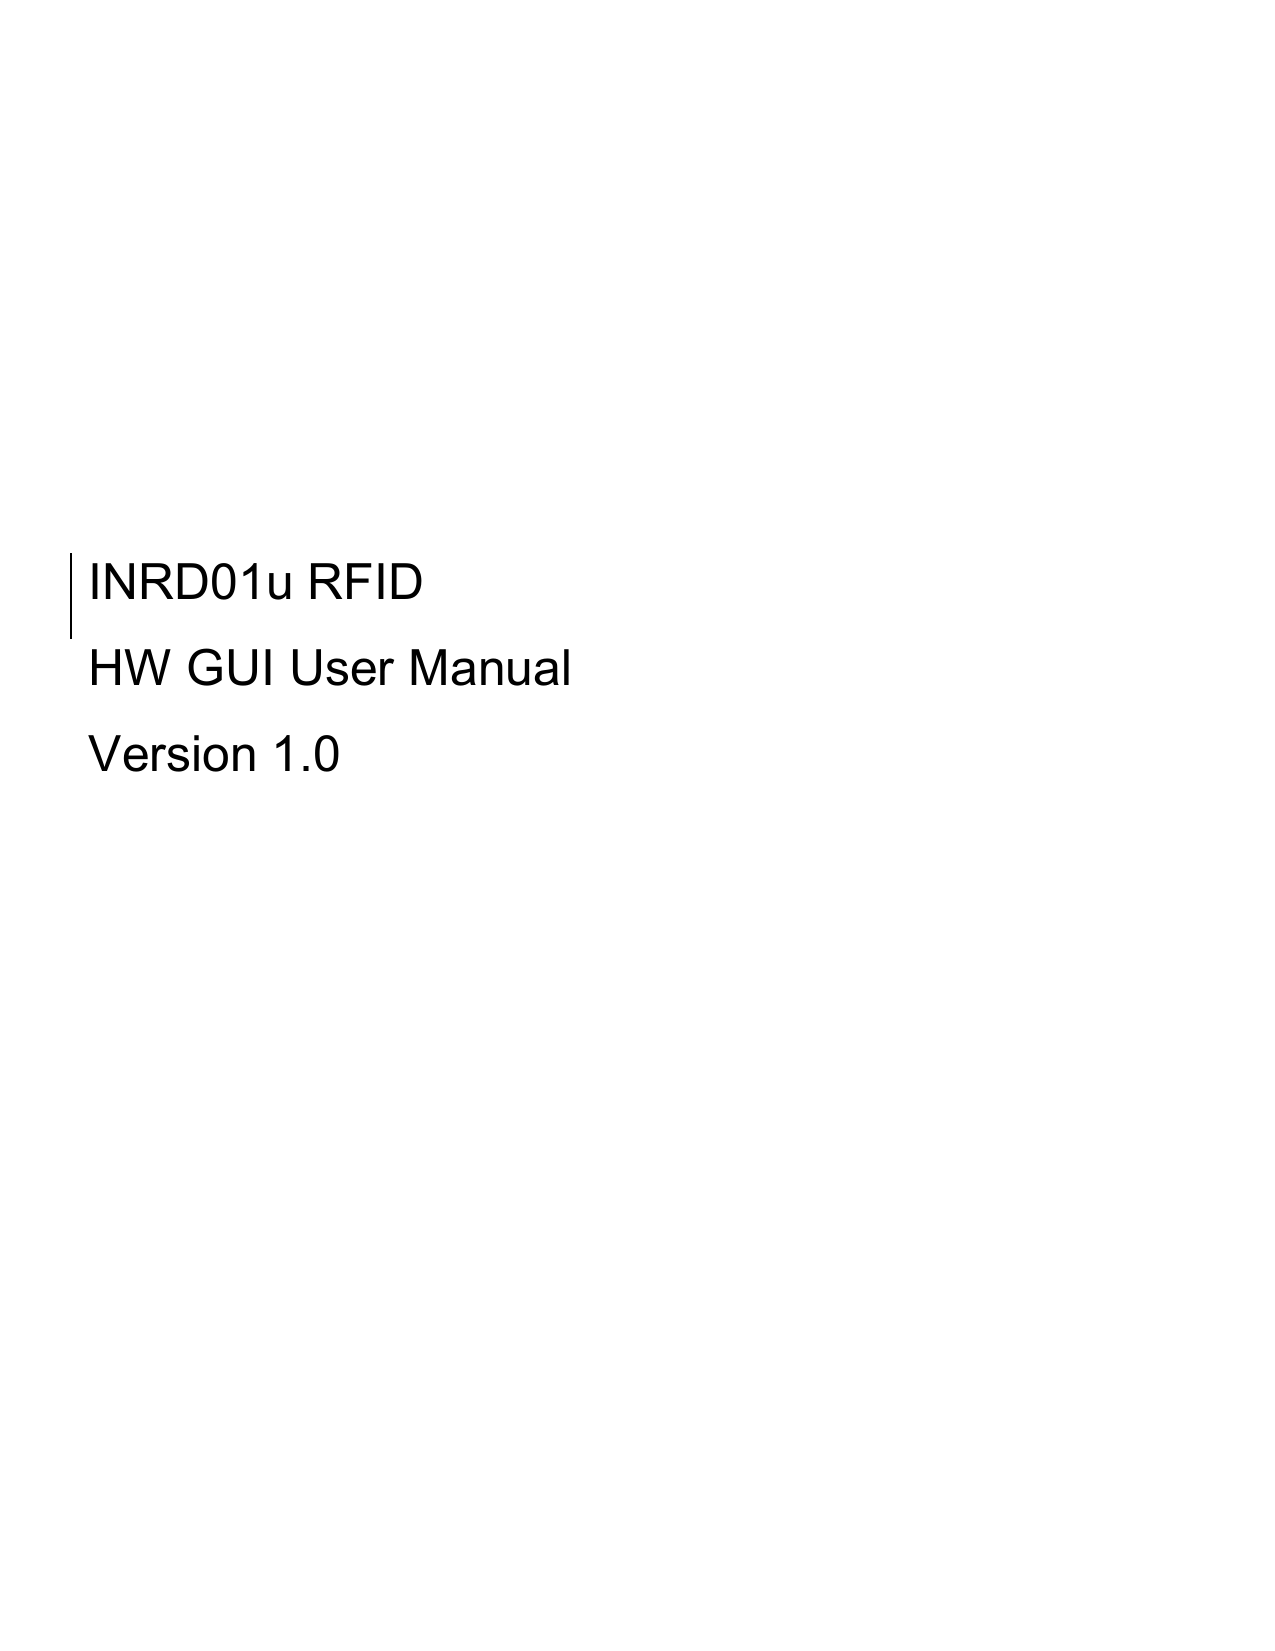           INRD01u RFID   HW GUI User Manual Version 1.0   